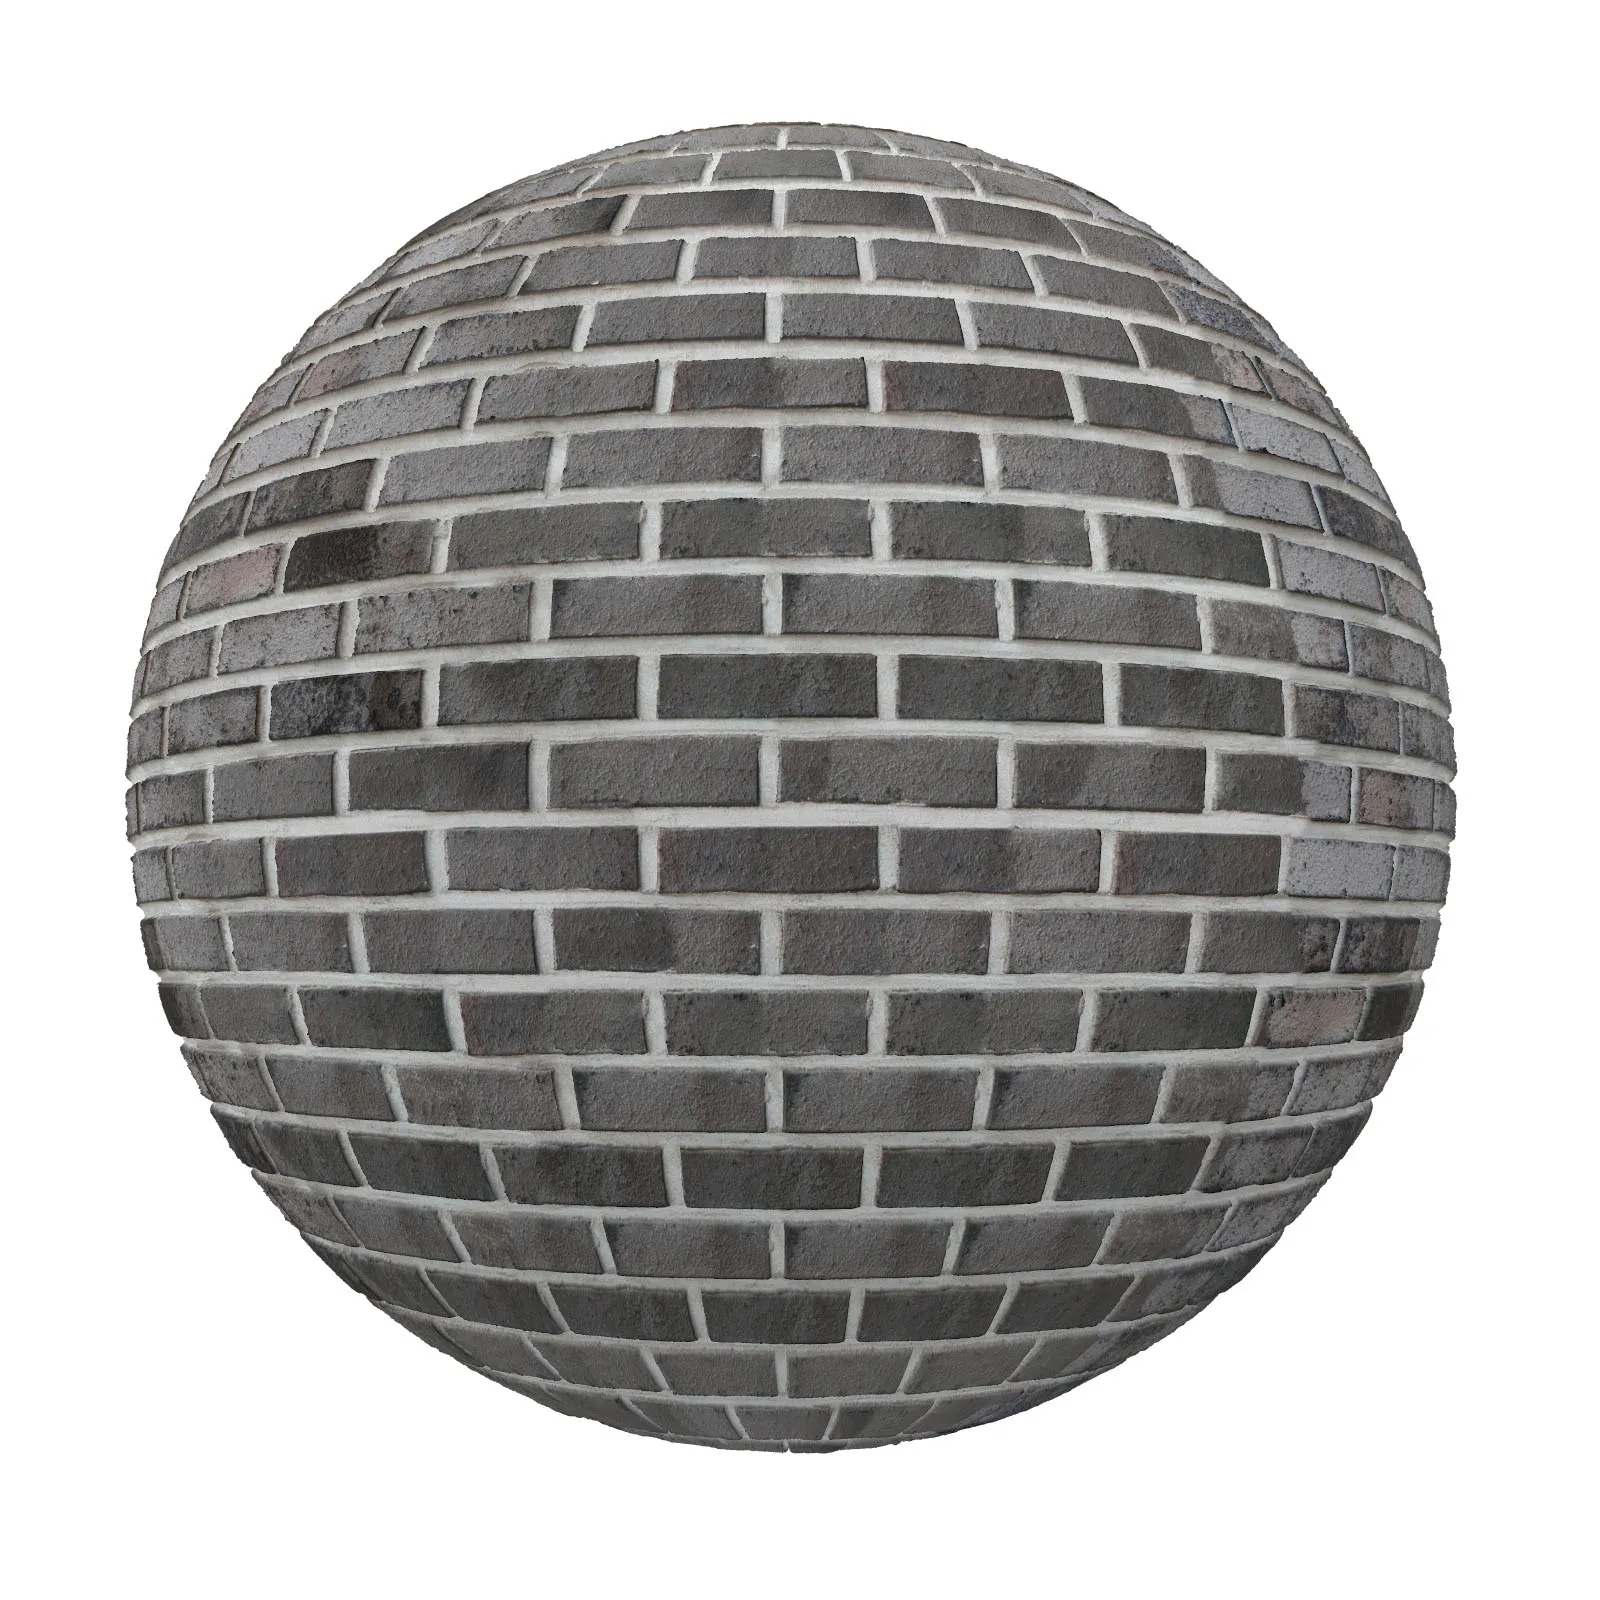 PBR CGAXIS TEXTURES – BRICK – Grey Brick Wall 3